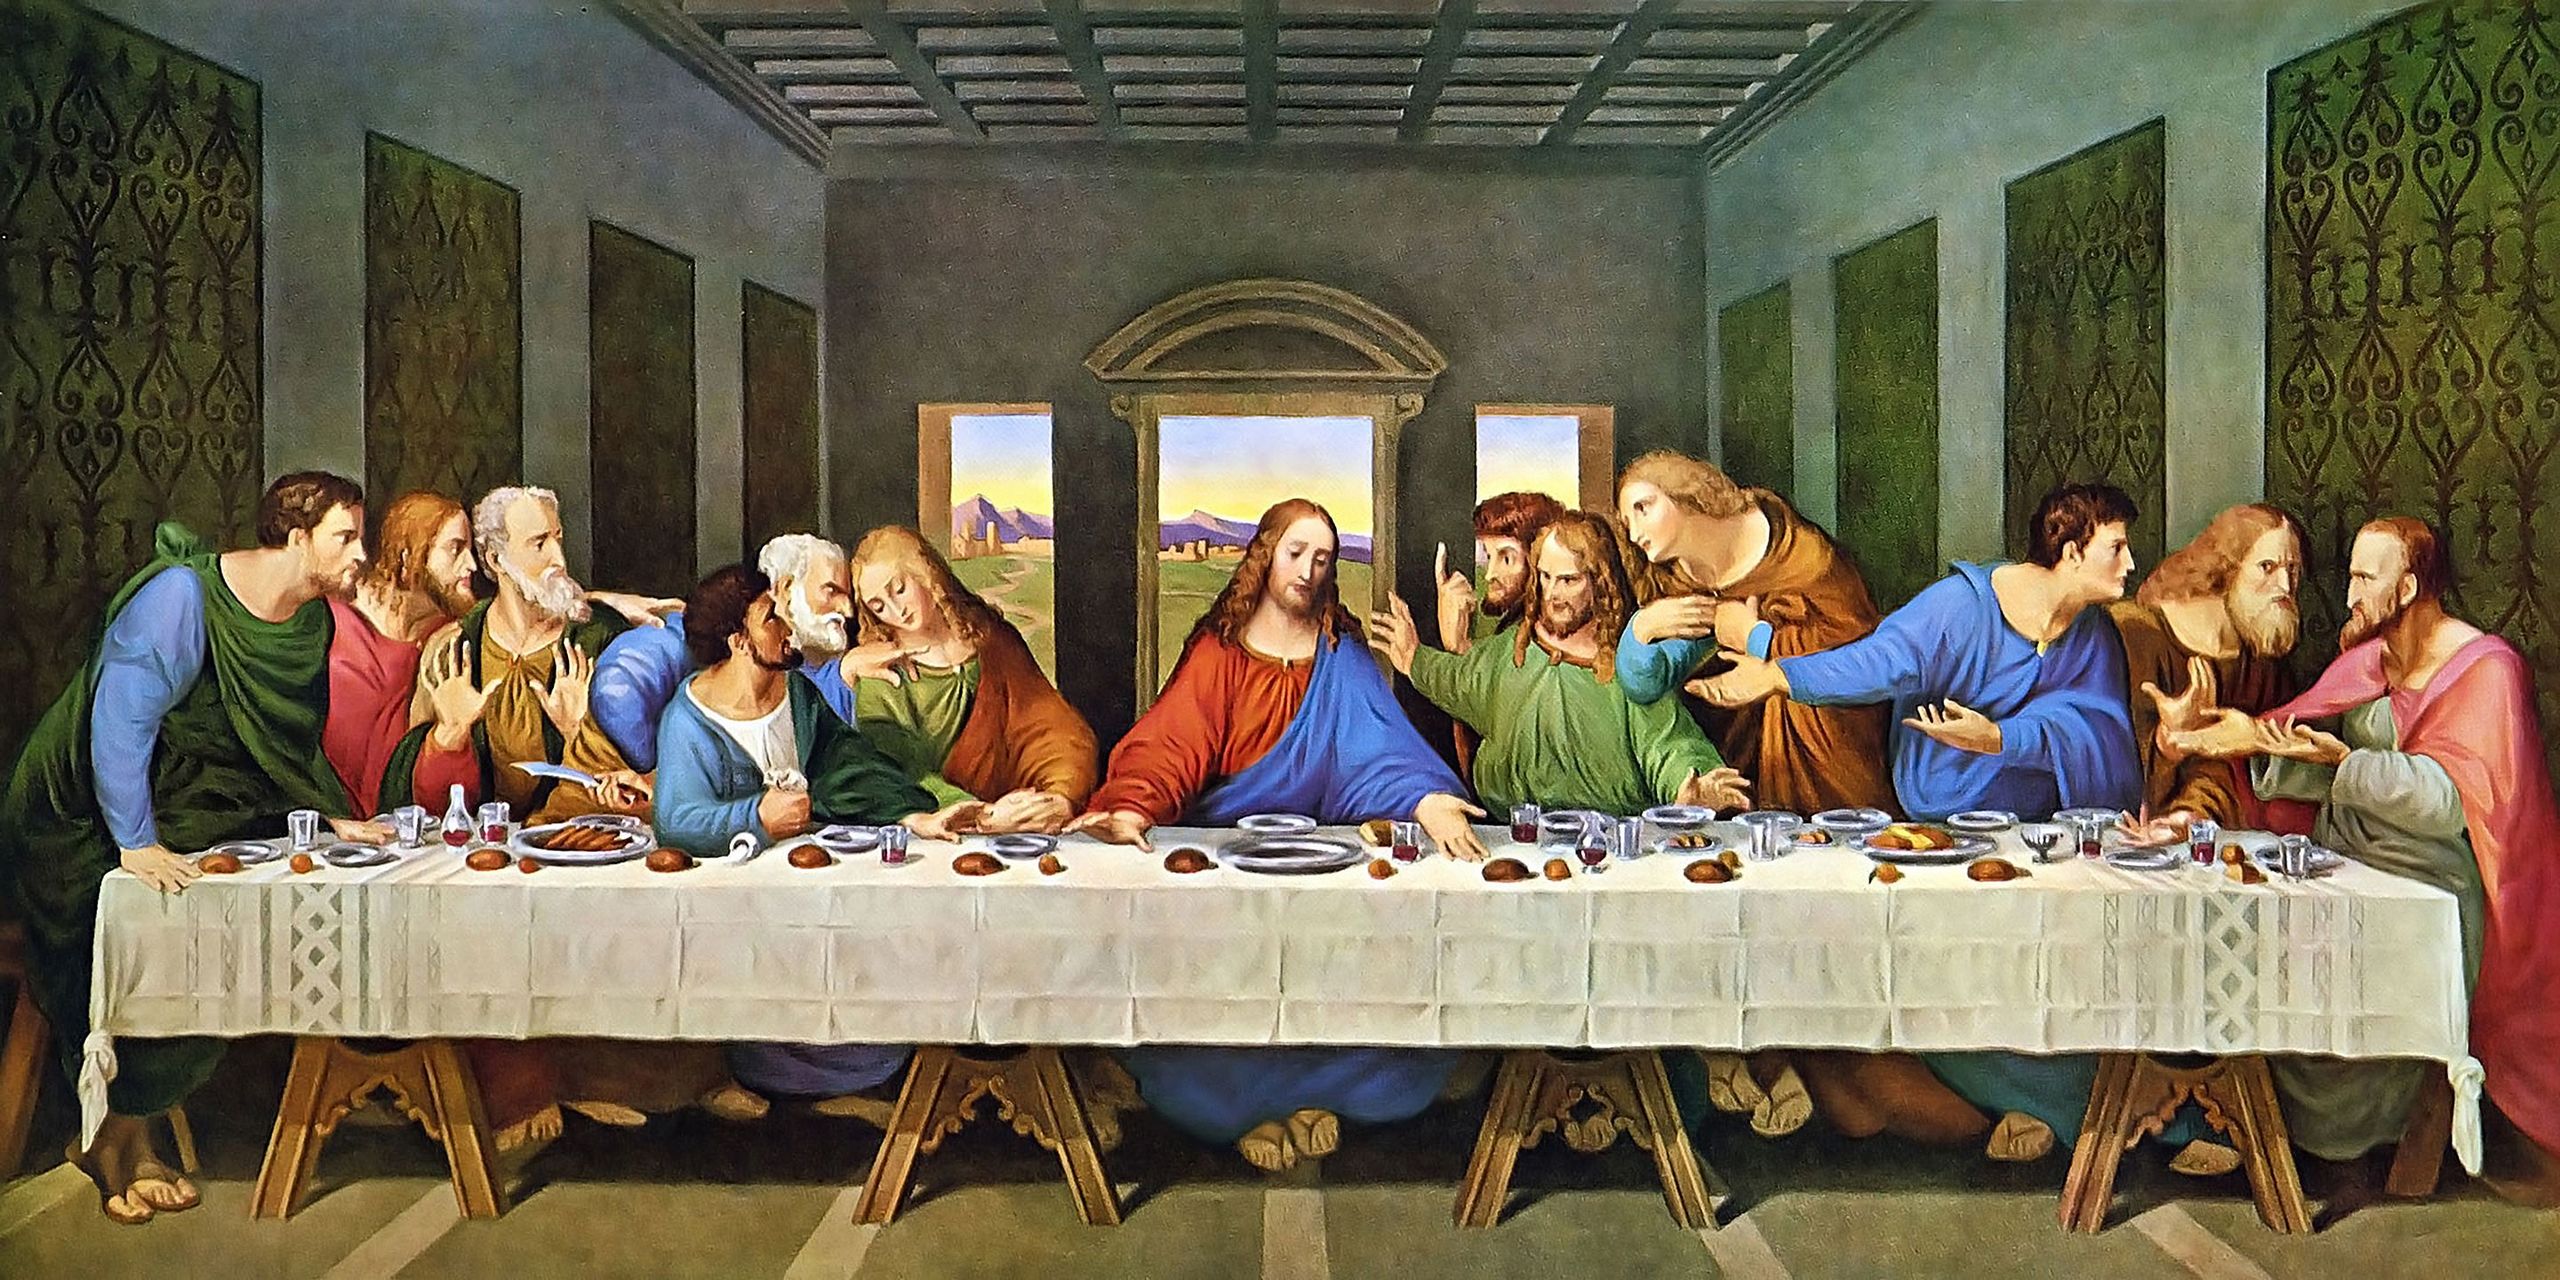 "The Last Supper" by Leonardo da Vinci